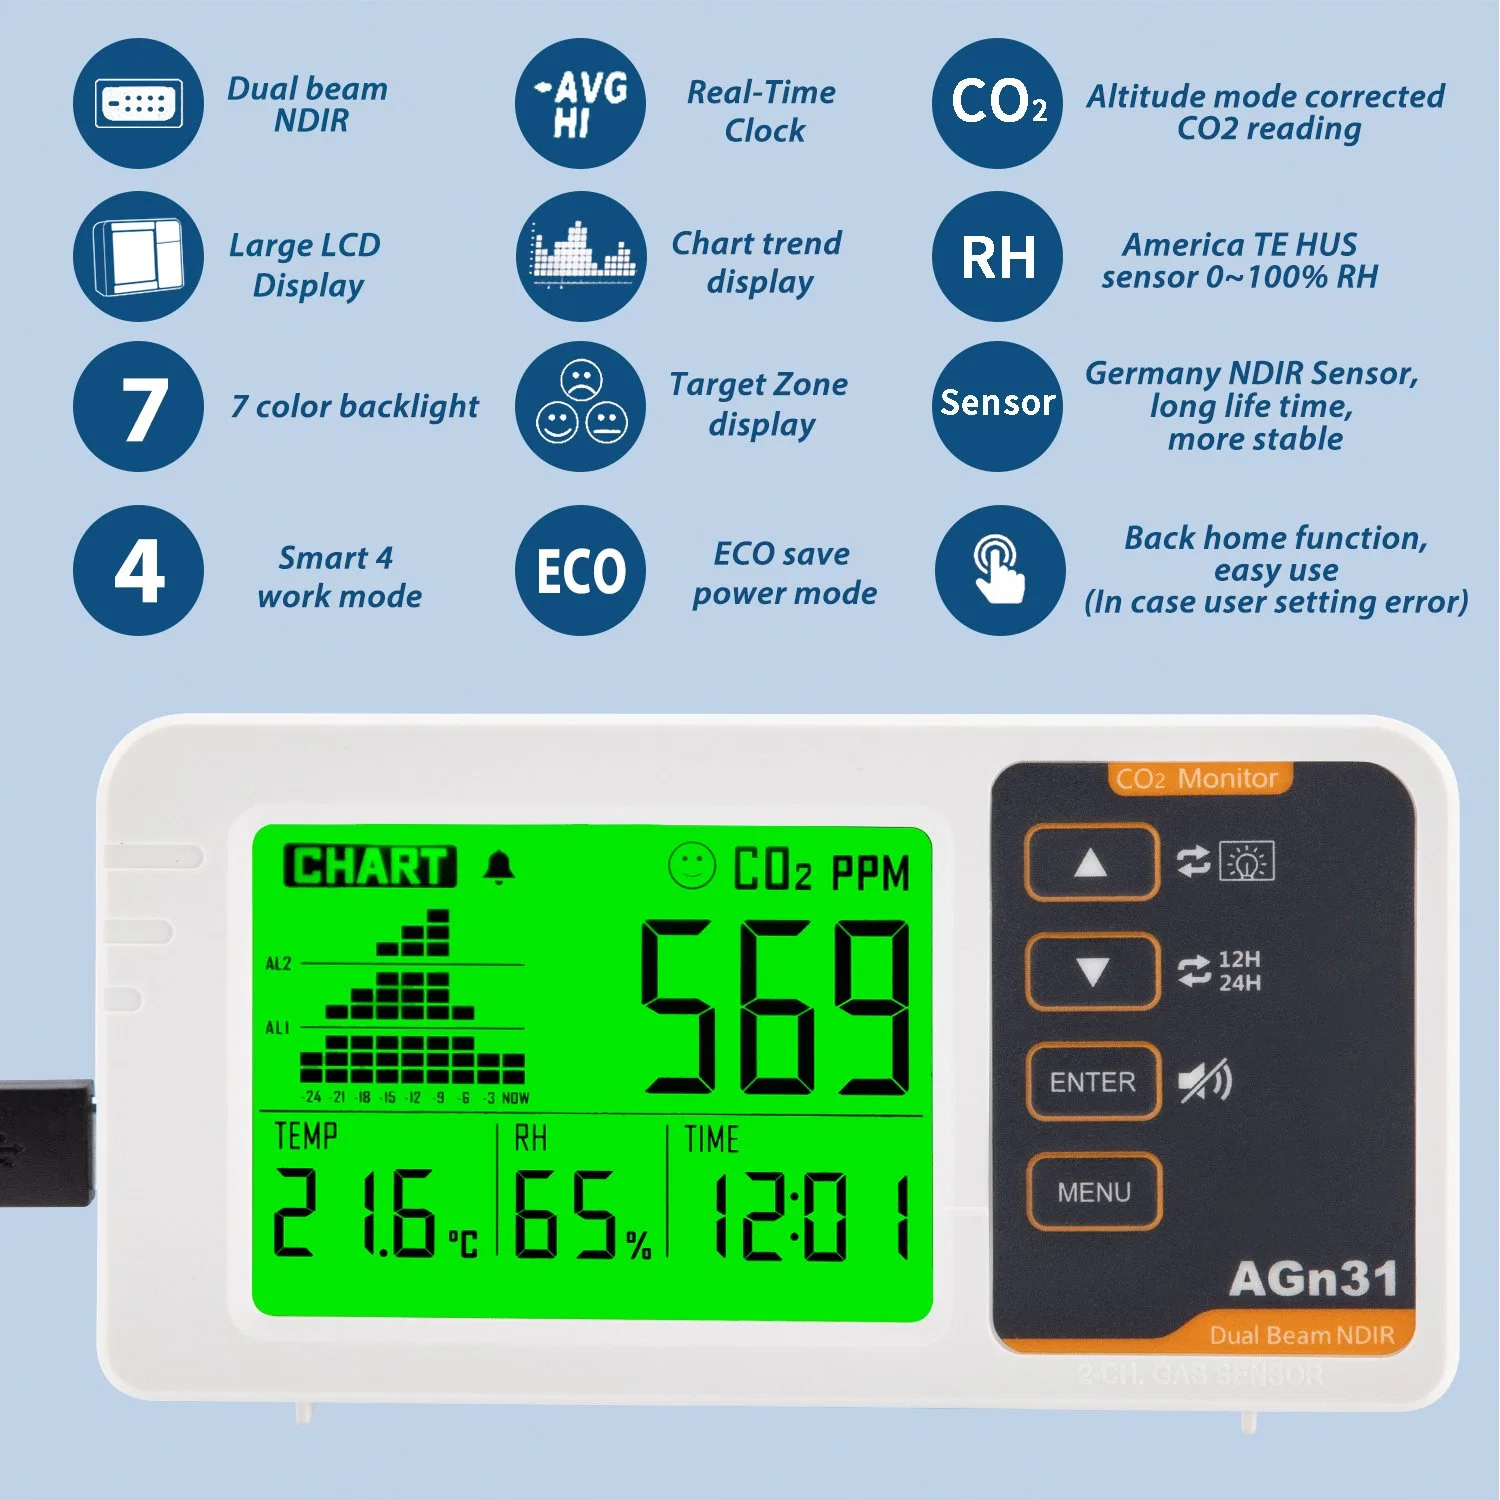 Der Sensor für das Luftqualitätsmessgerät erfasst Home CO2, Temperatur und Luftfeuchtigkeit